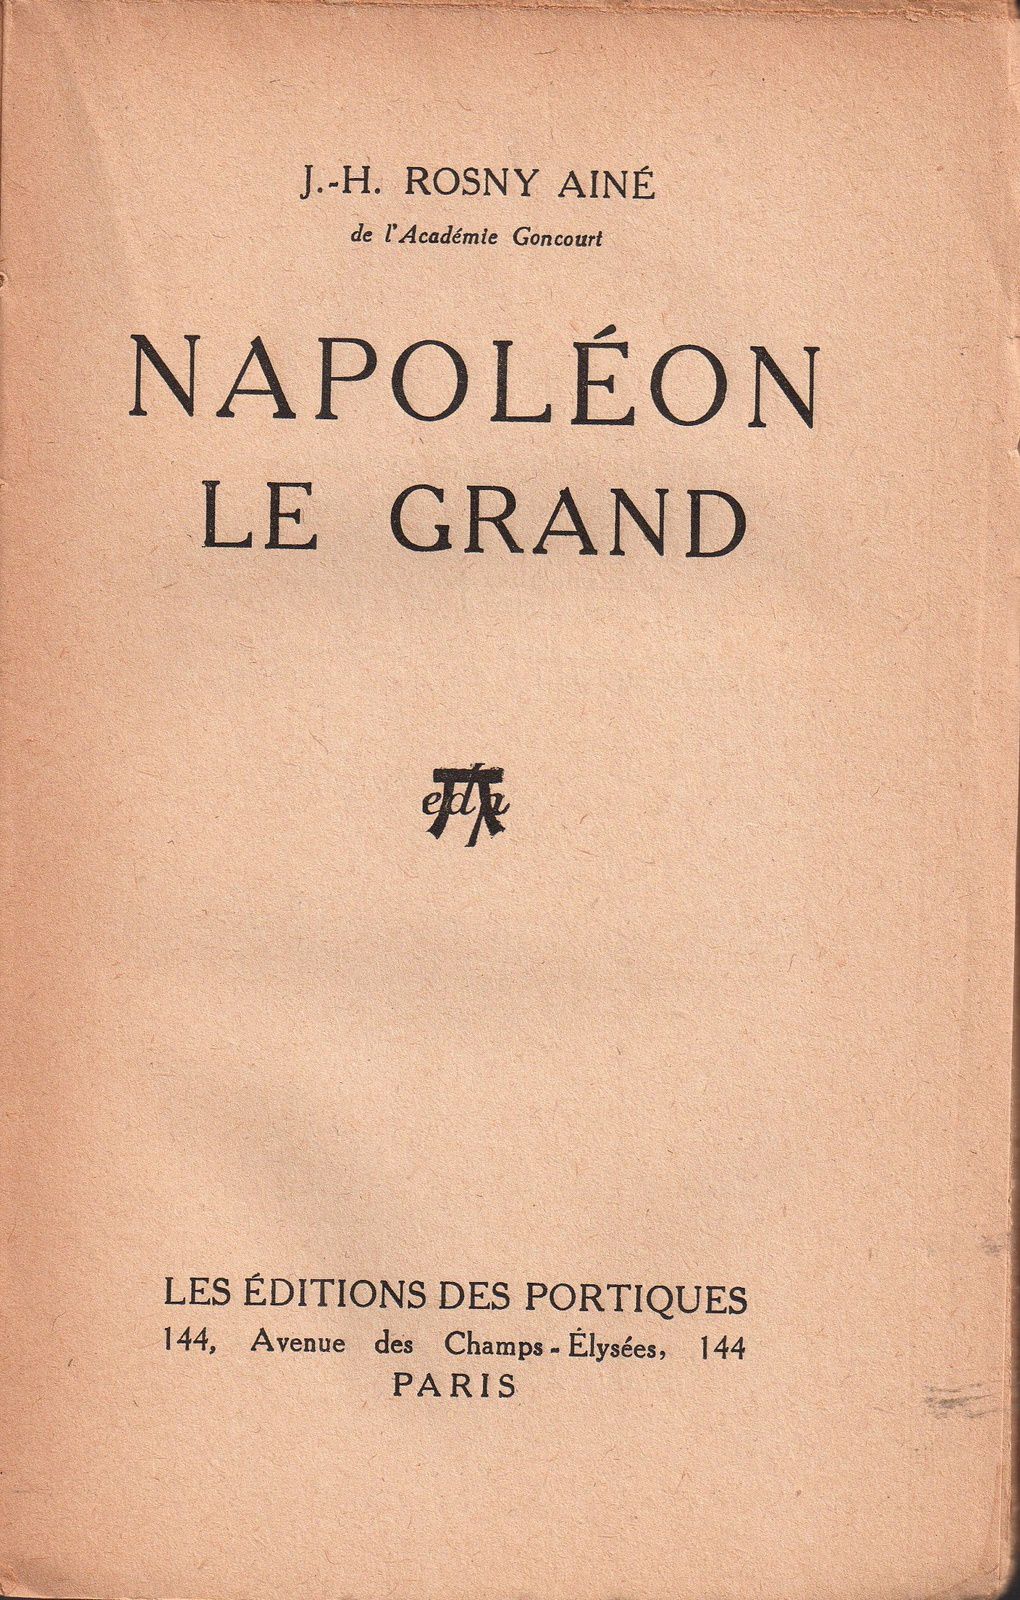 J.-H. Rosny aîné "Napoléon Le Grand" (Editions des Portiques - 1931) [service de presse]